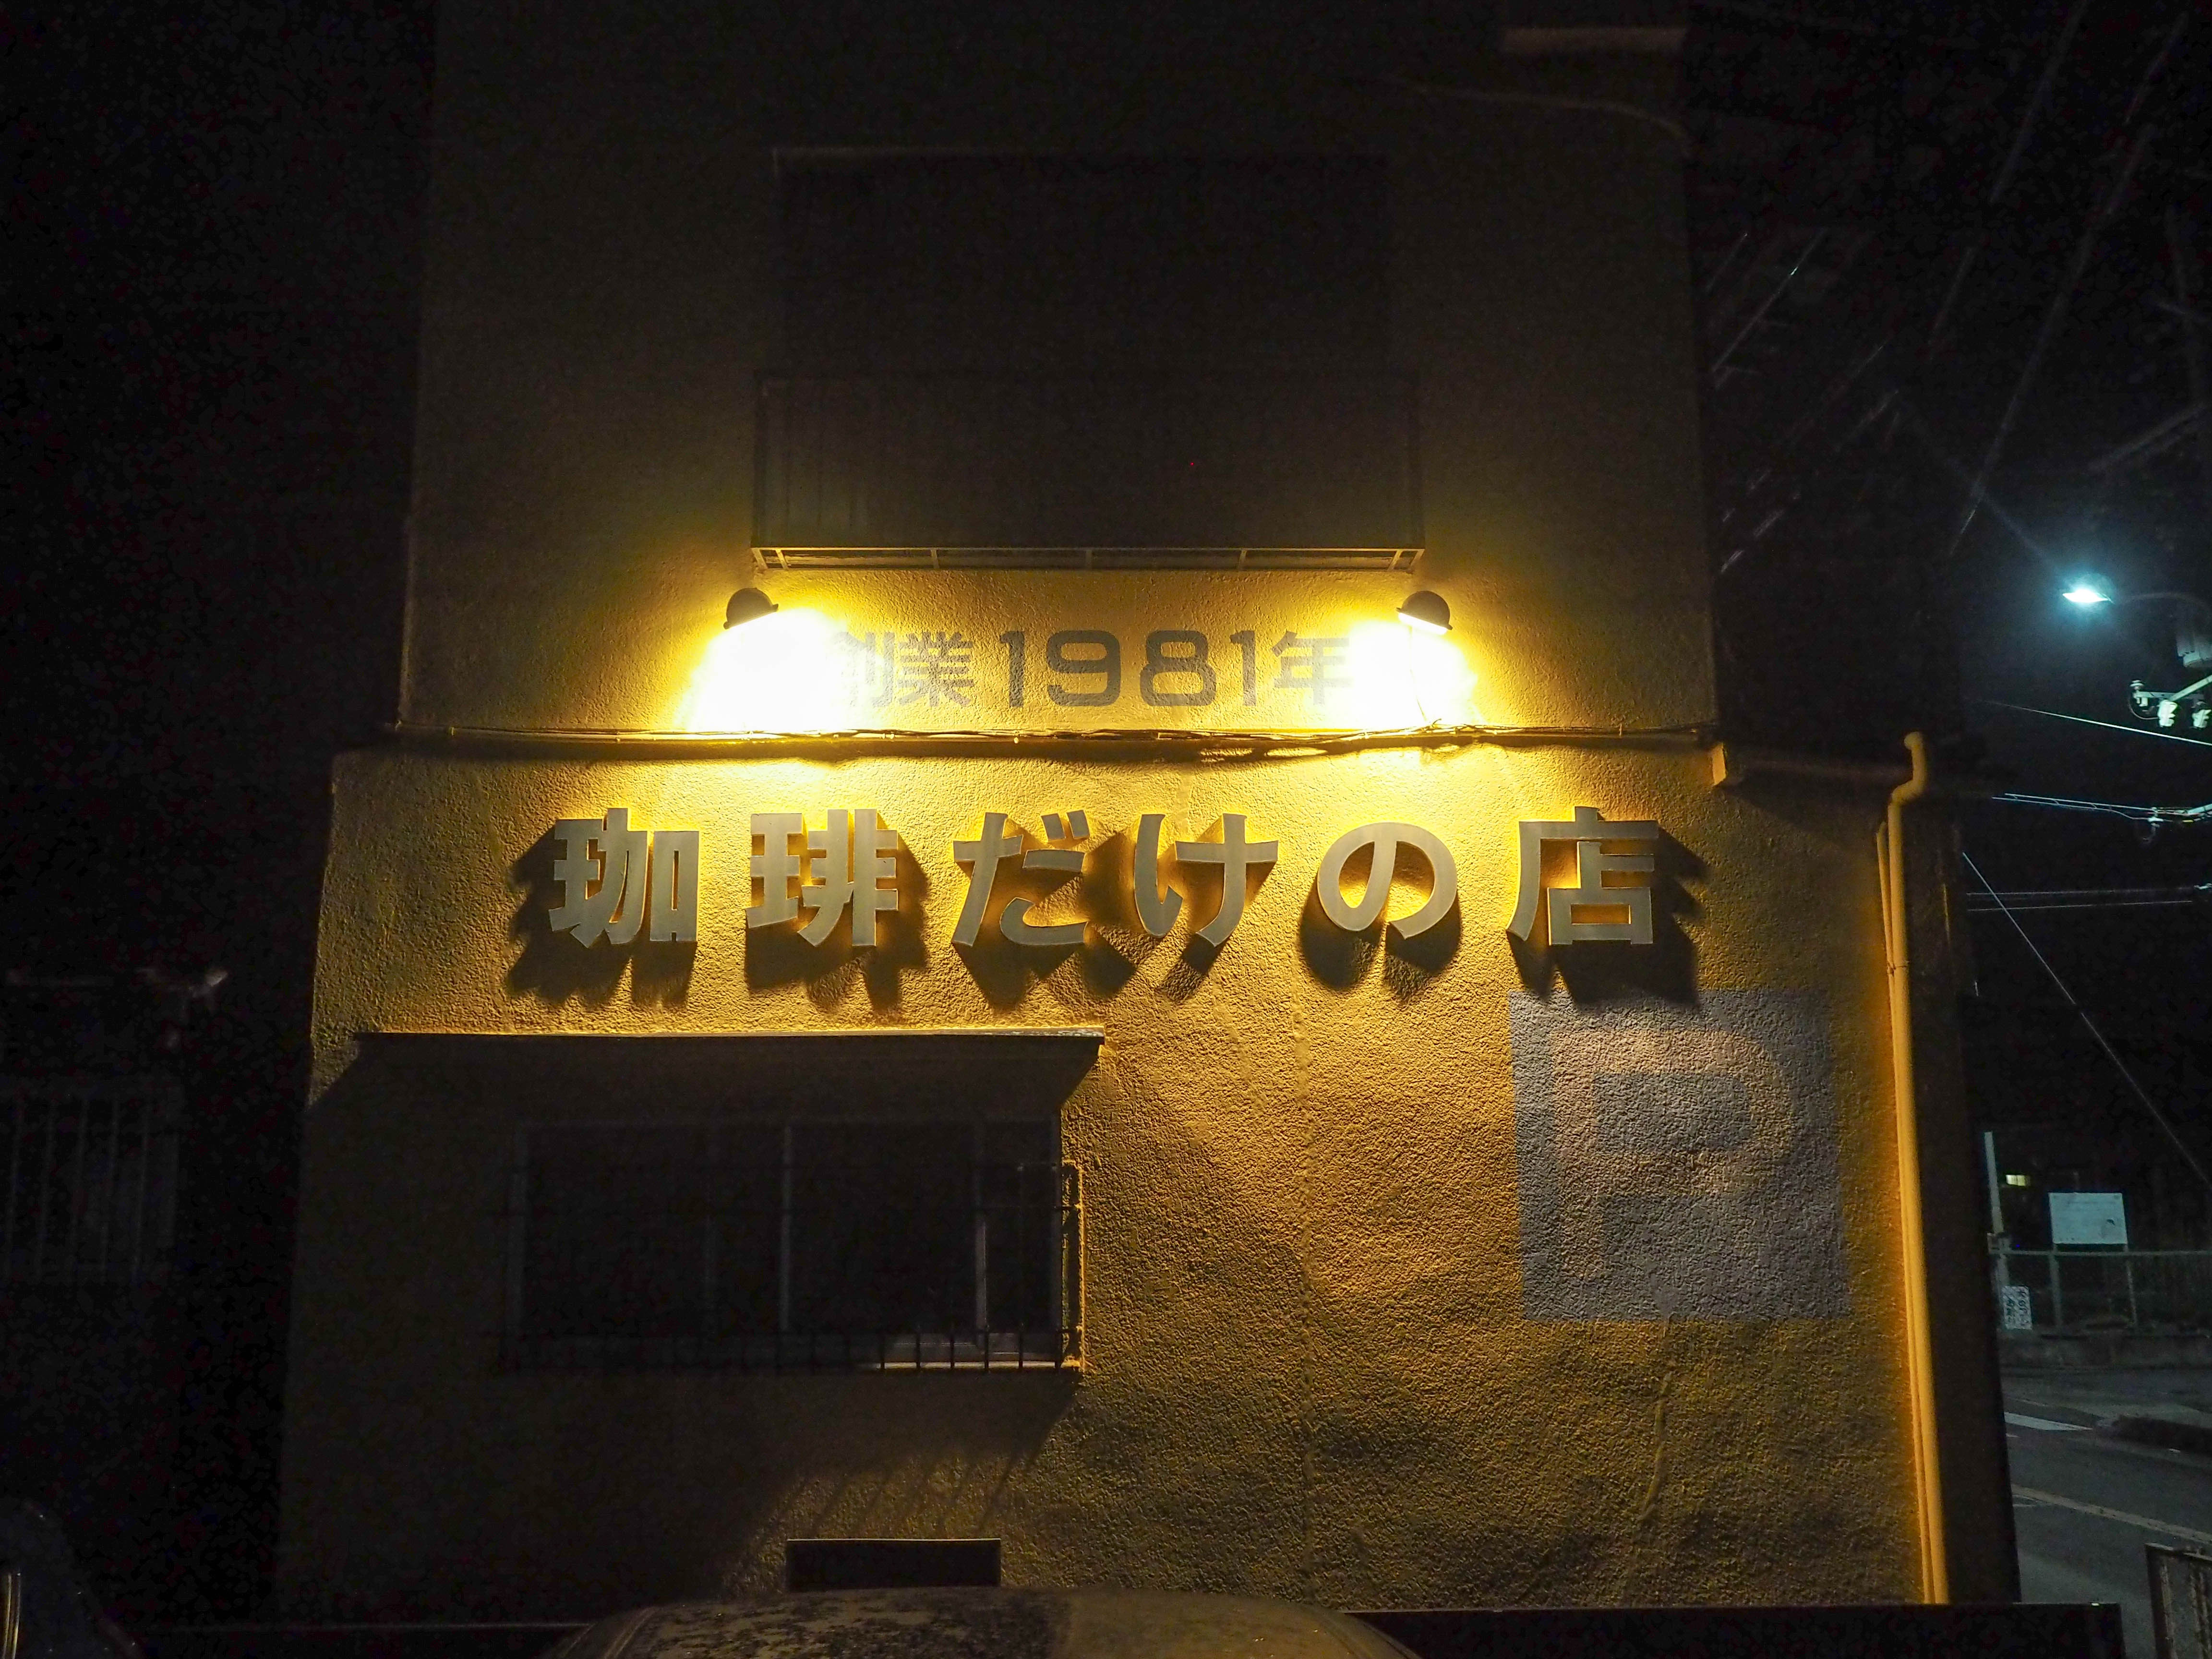 大阪の八尾にある伝説の珈琲店「ザ・ミュンヒ」で究極のコーヒーとポエムを頂く不思議な時間